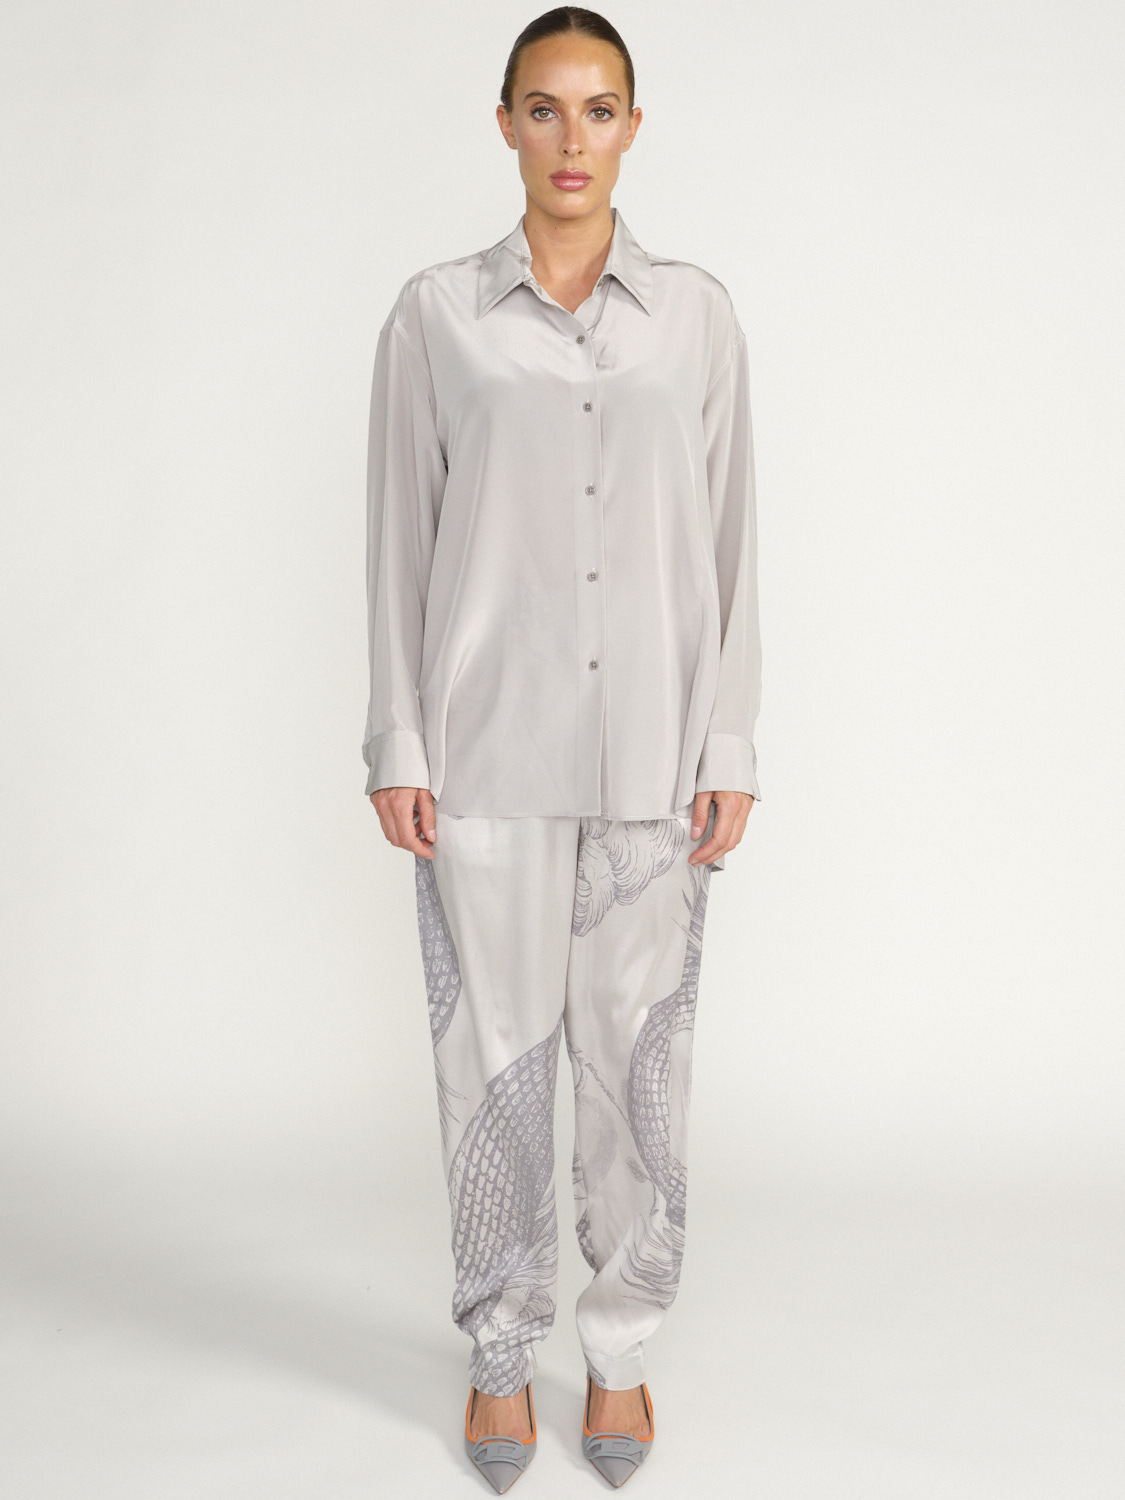 Nili Lotan Julien Camisa de Seda - Blusa de seda holgada gris S